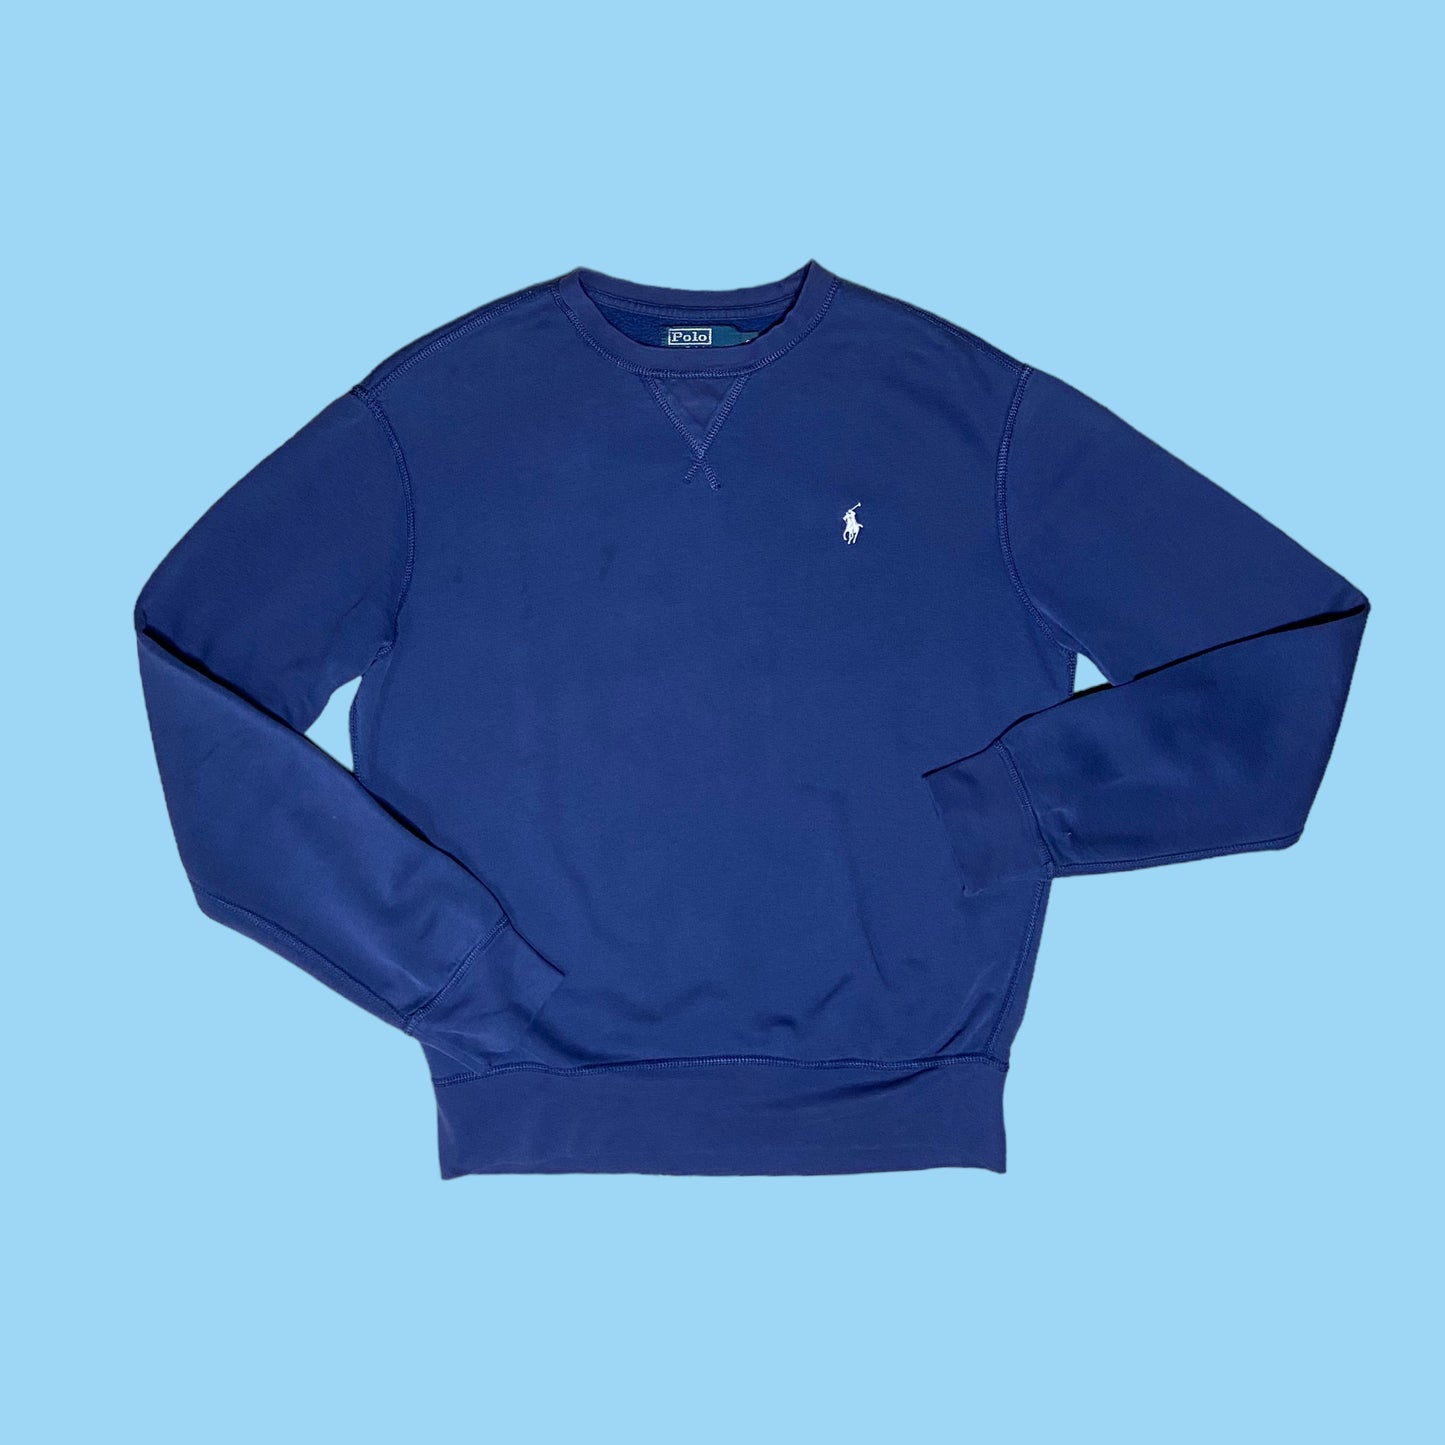 Vintage Ralph Lauren sweater - S